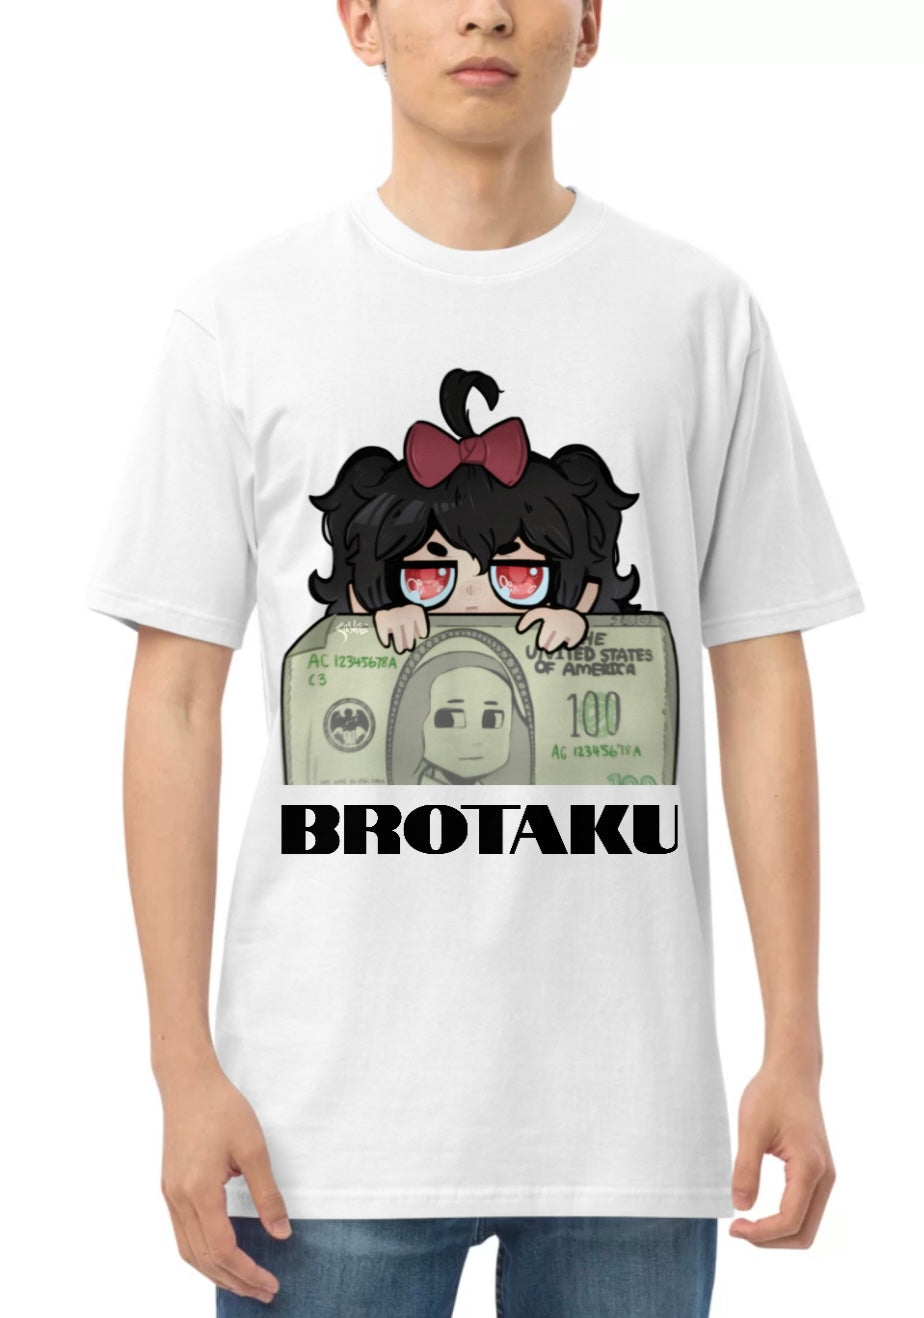 brOtaku “Peek-$$$-Boo” T-Shirt